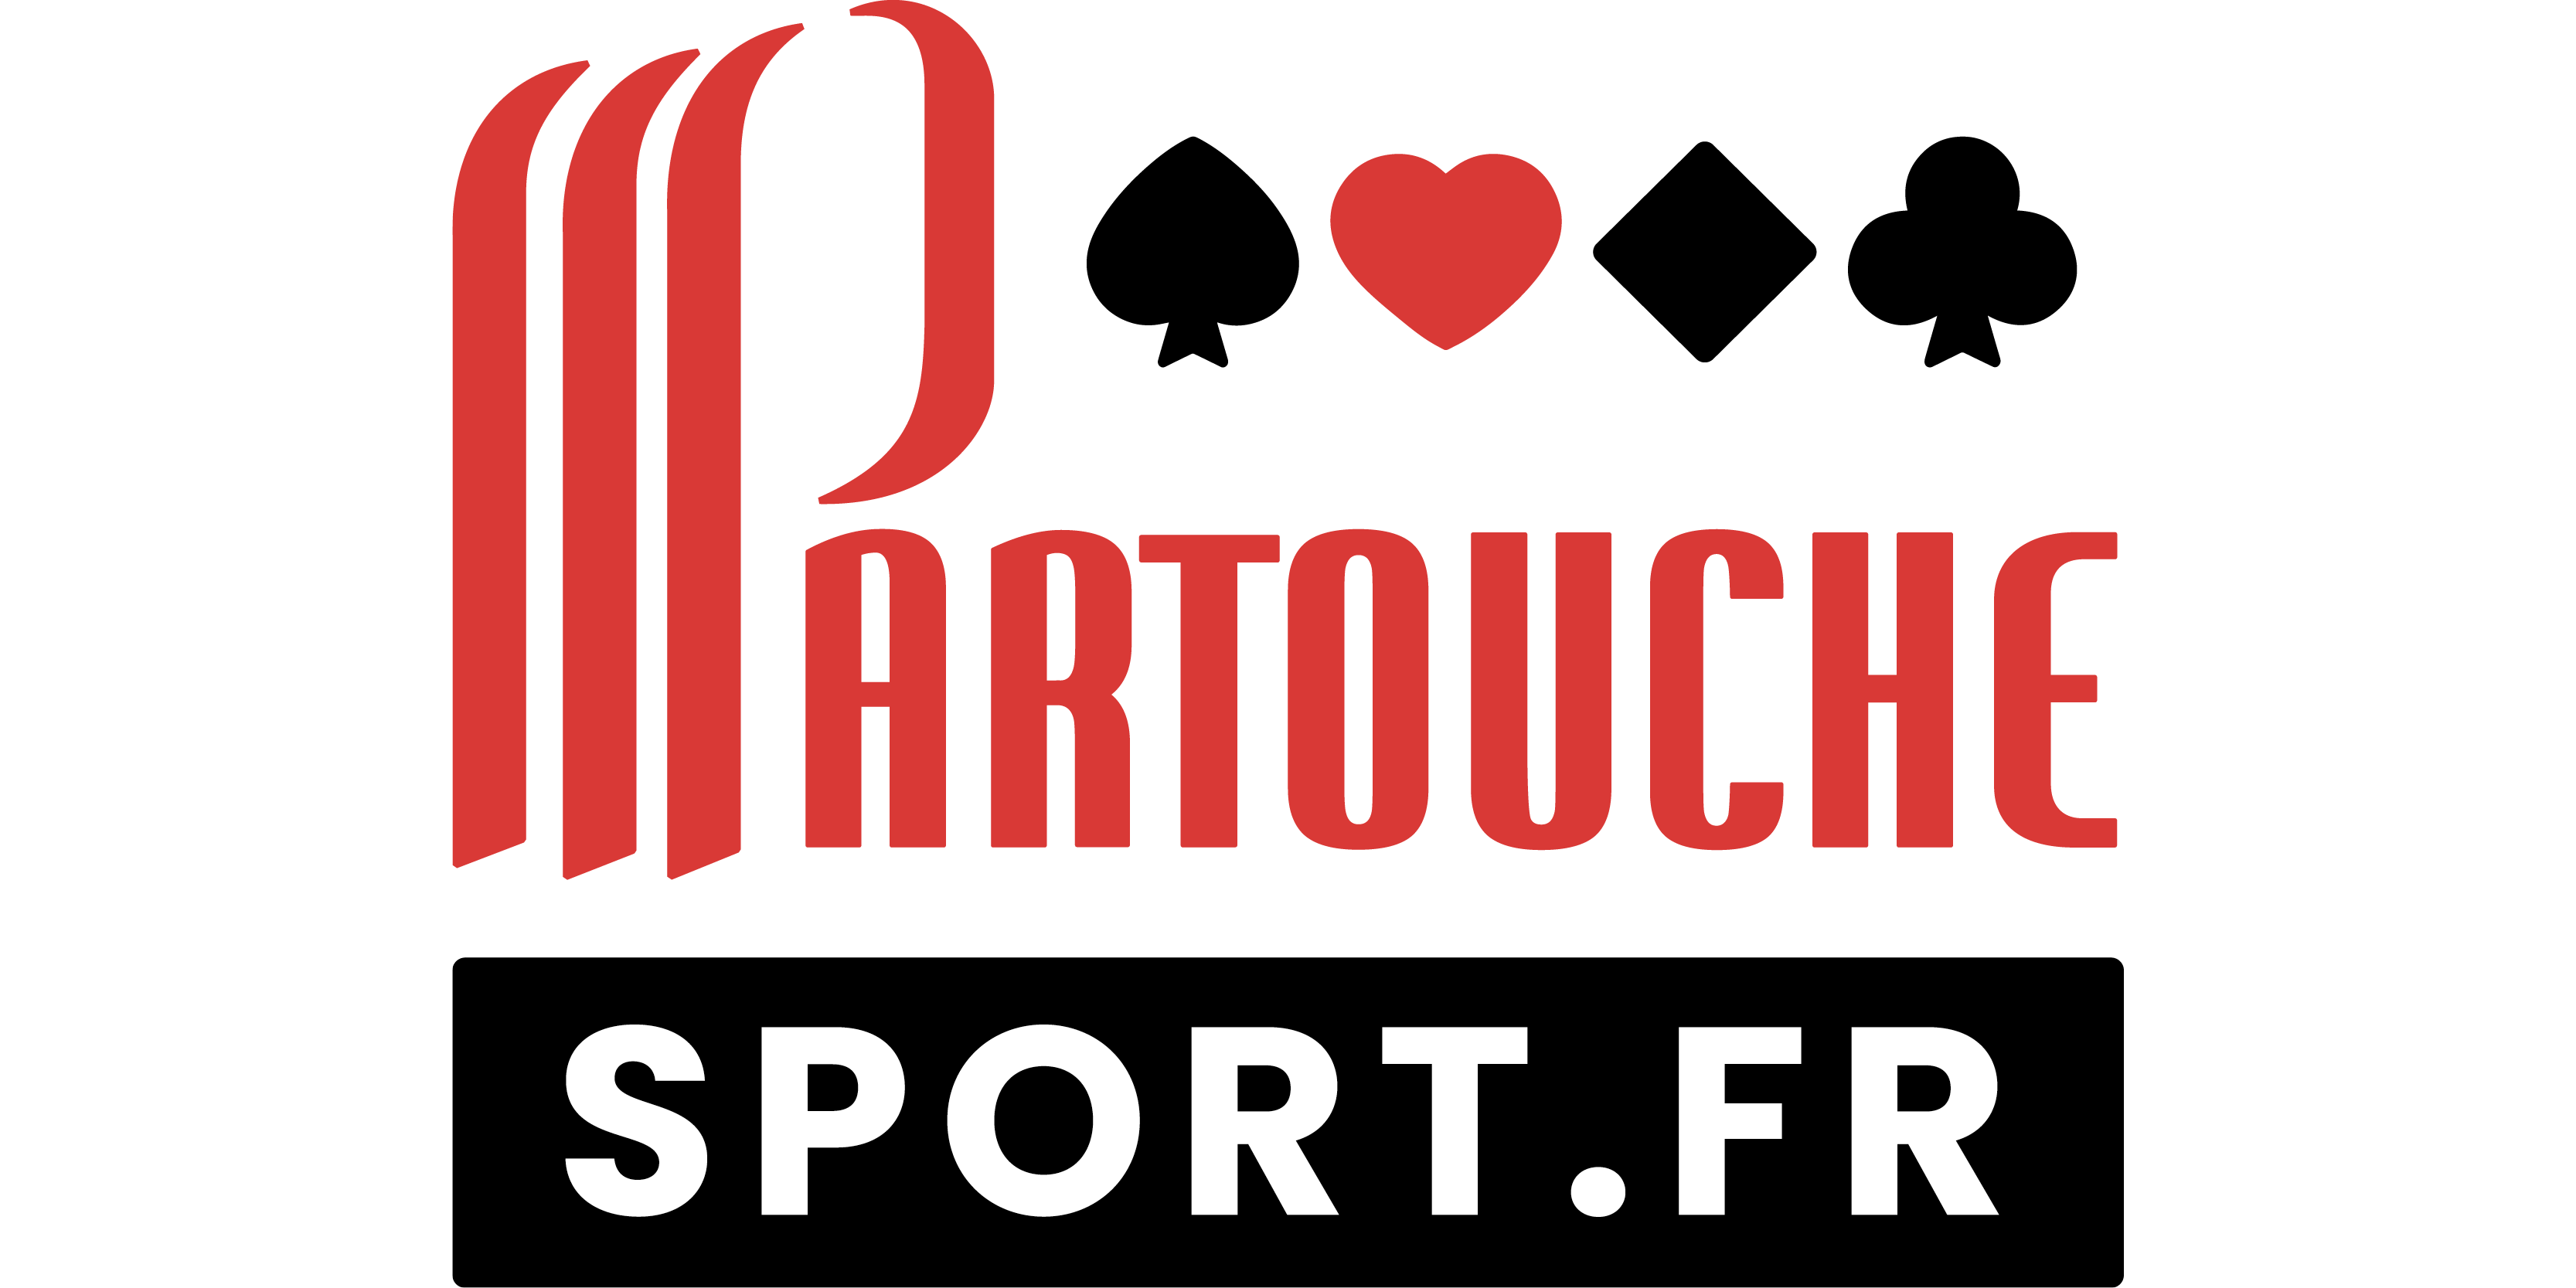 002_Partouche sport